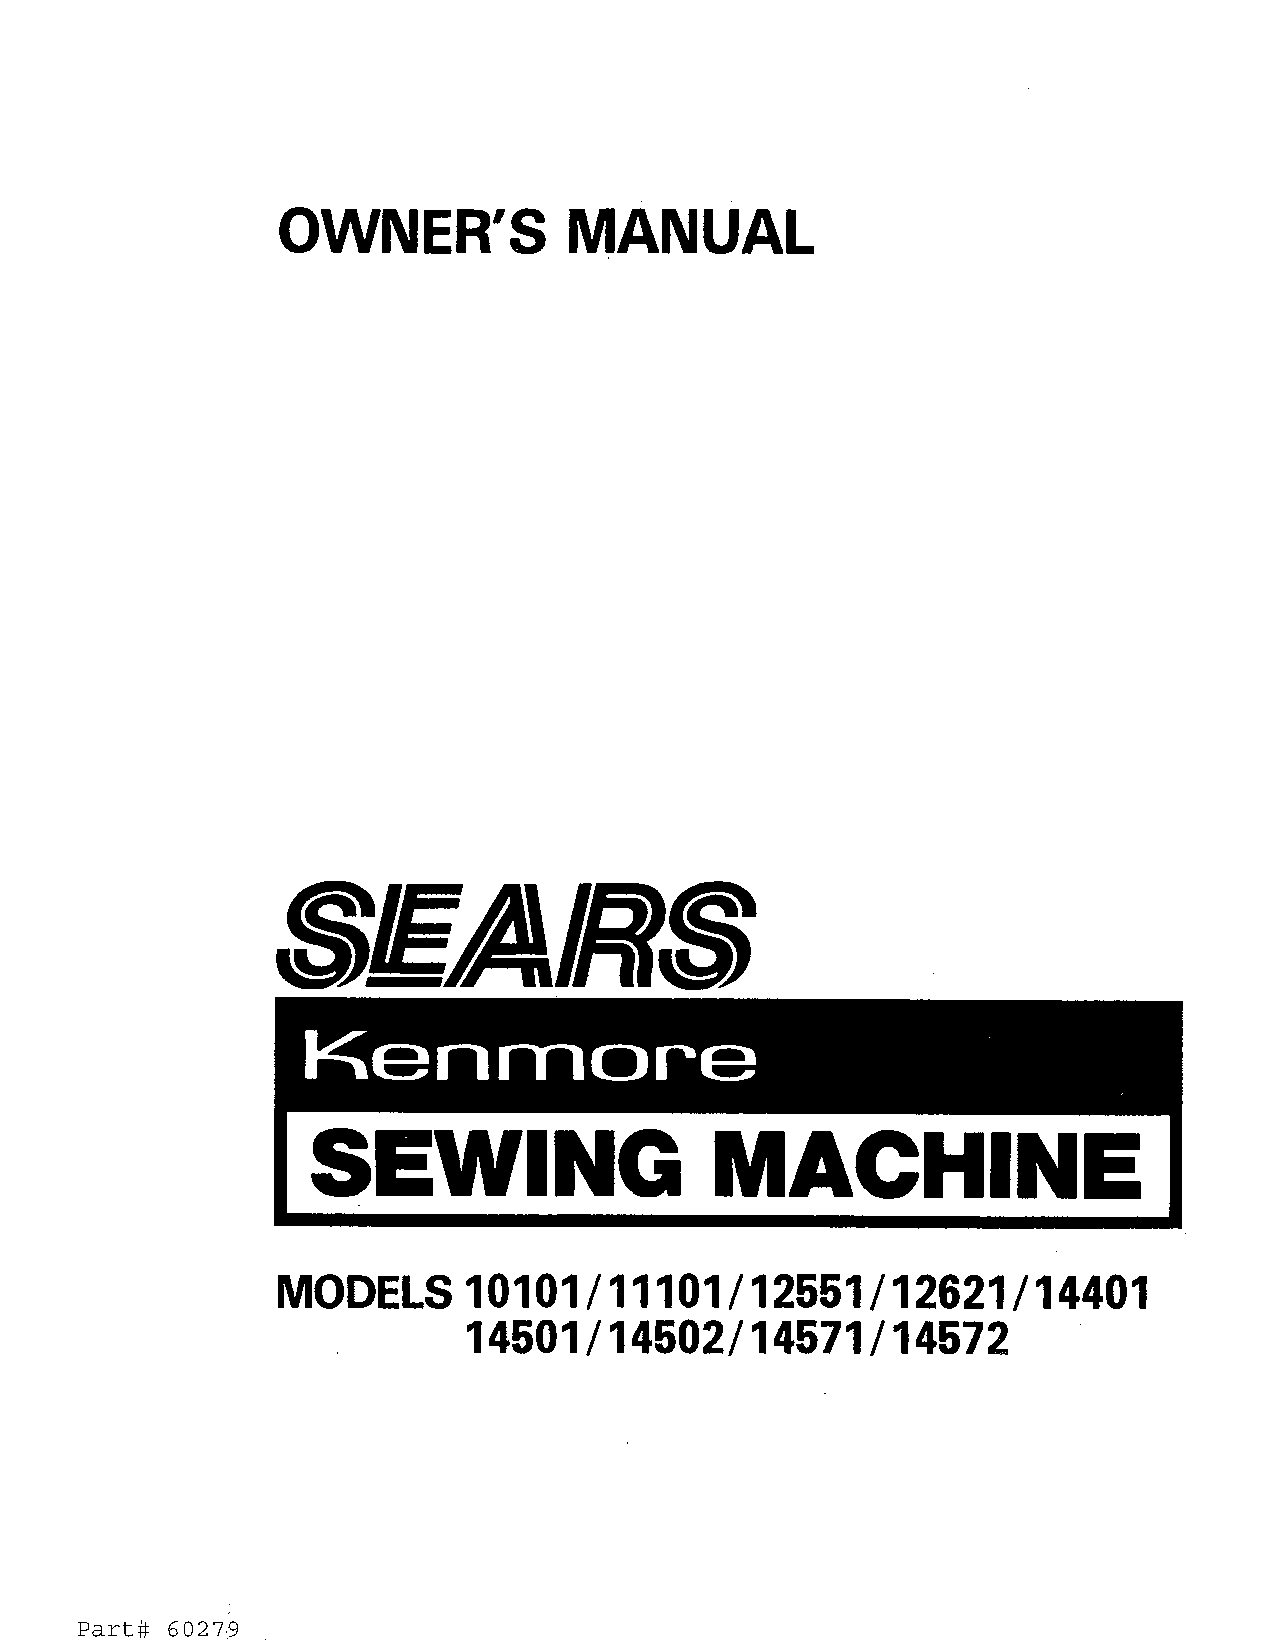 Kenmore SWA-RS 14572, SWA-RS 12551 User Manual